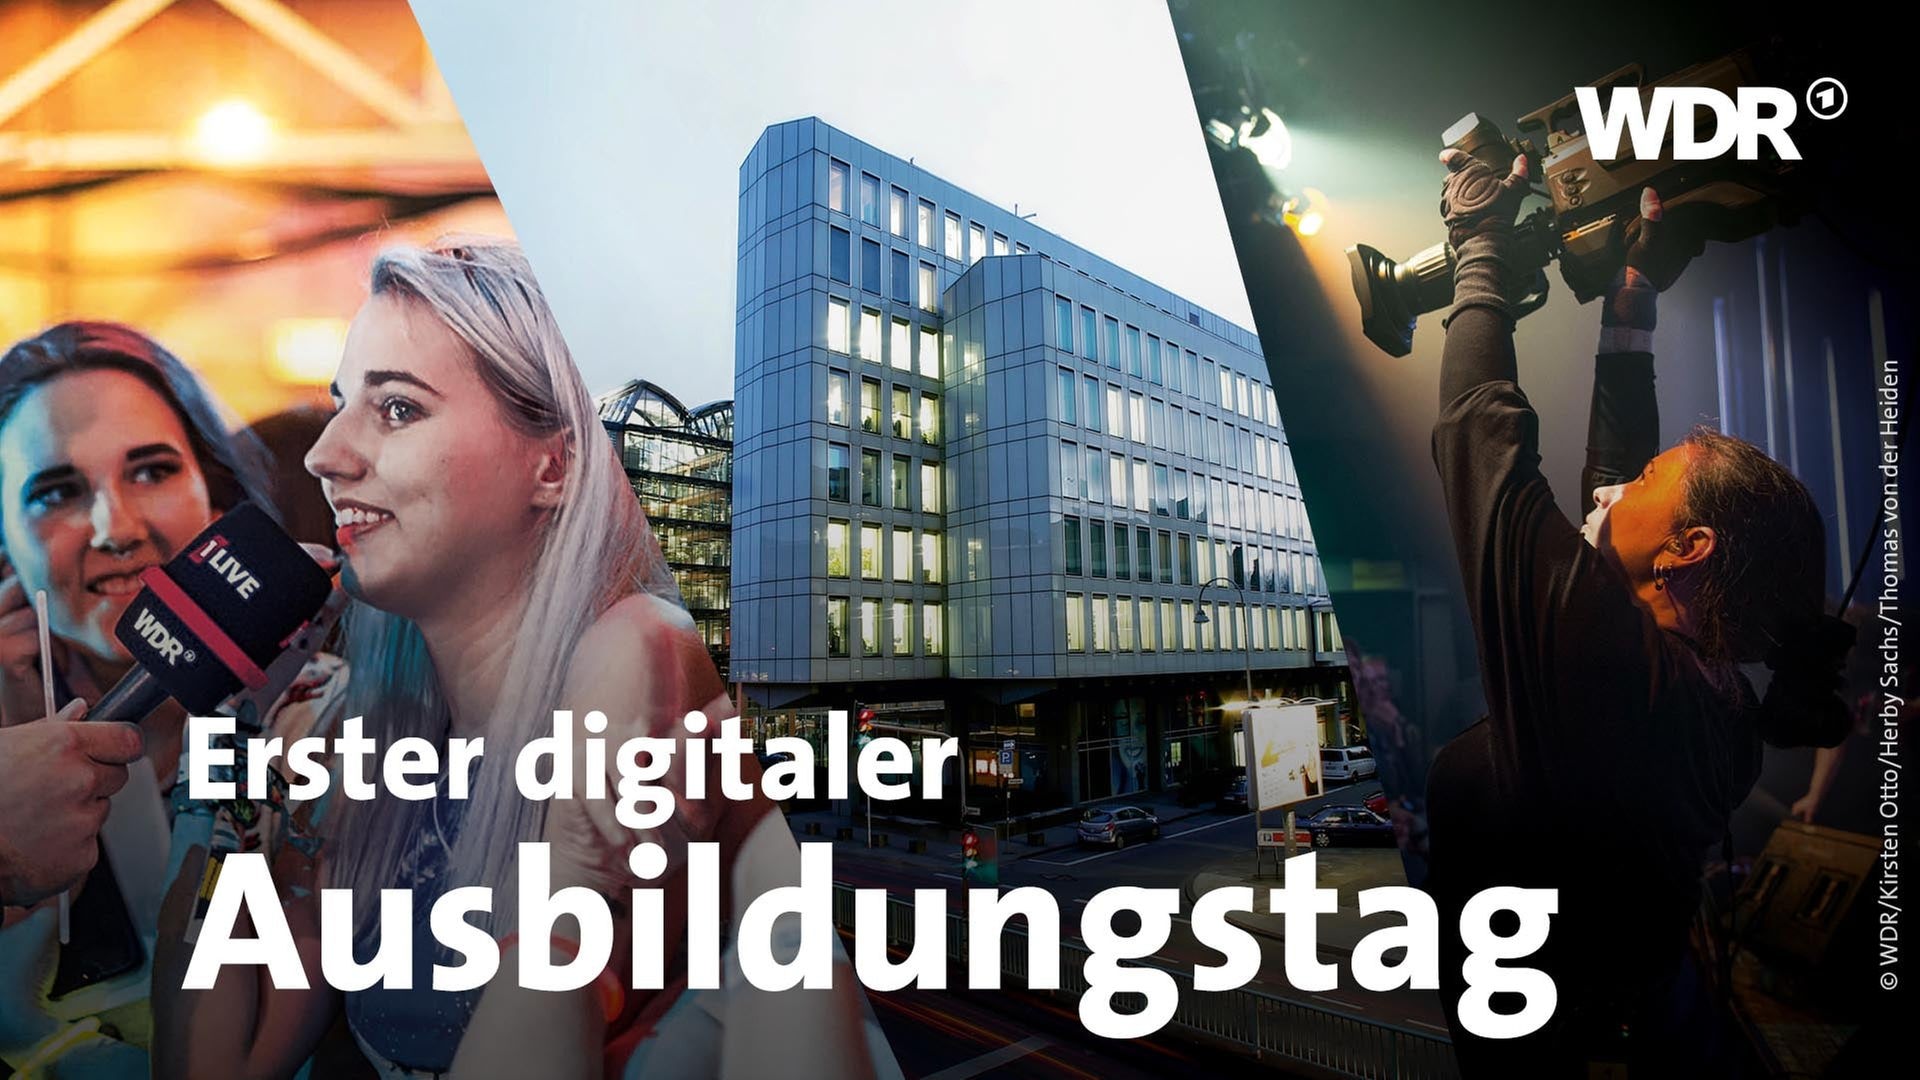 WDR wirbt digital um Azubis - Startseite Unternehmen - Unternehmen